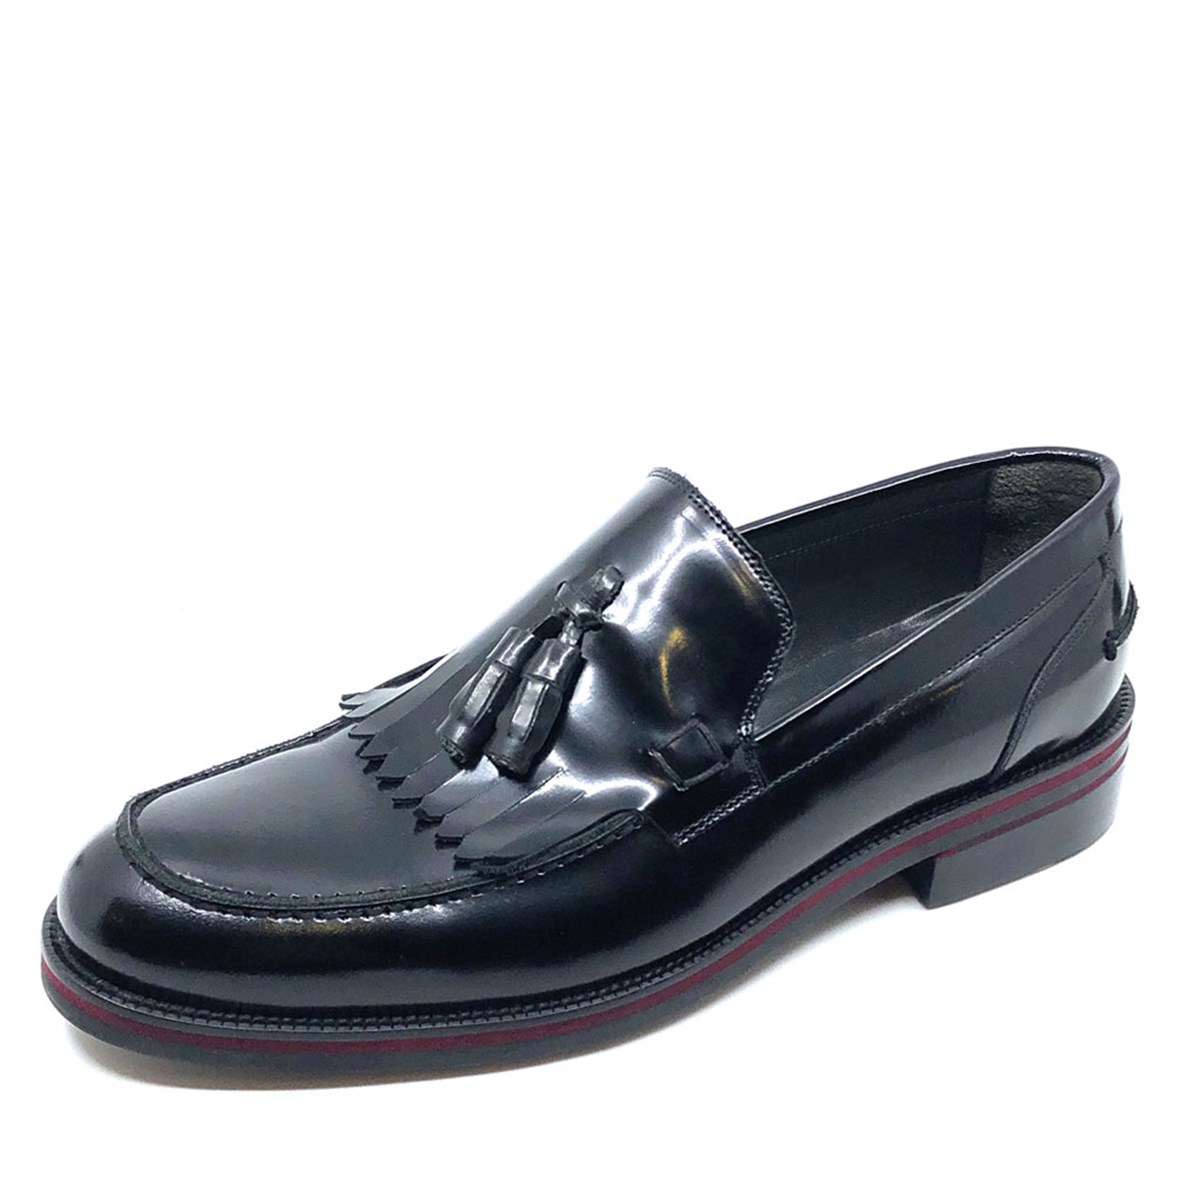 Erkek Günlük Bağcıksız Hakiki Deri Ayakkabı, Renk: Rugan Siyah, Beden: 40